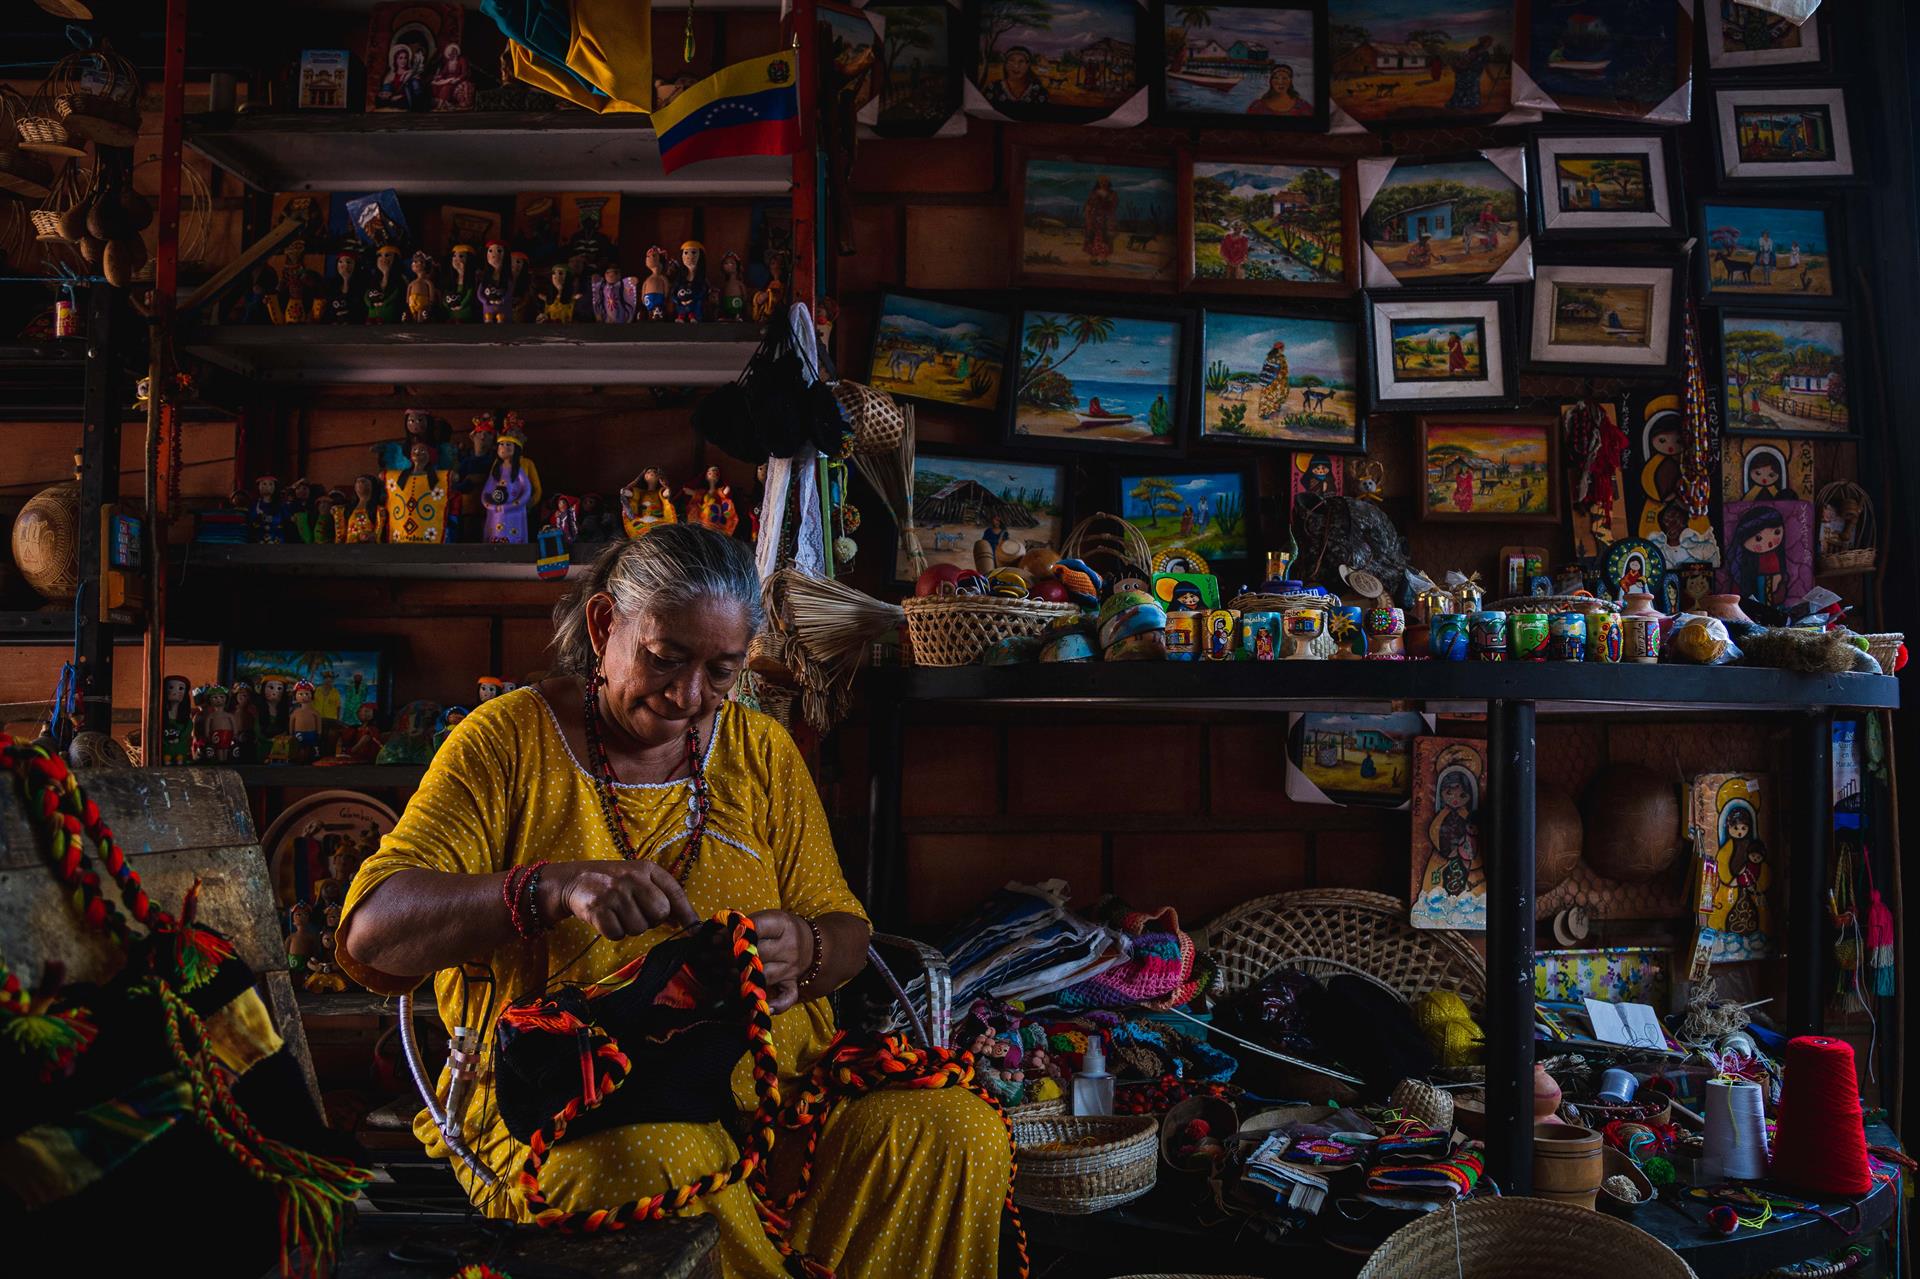 Mujeres indígenas venezolanas buscan esfuerzos para reivindicar su lugar